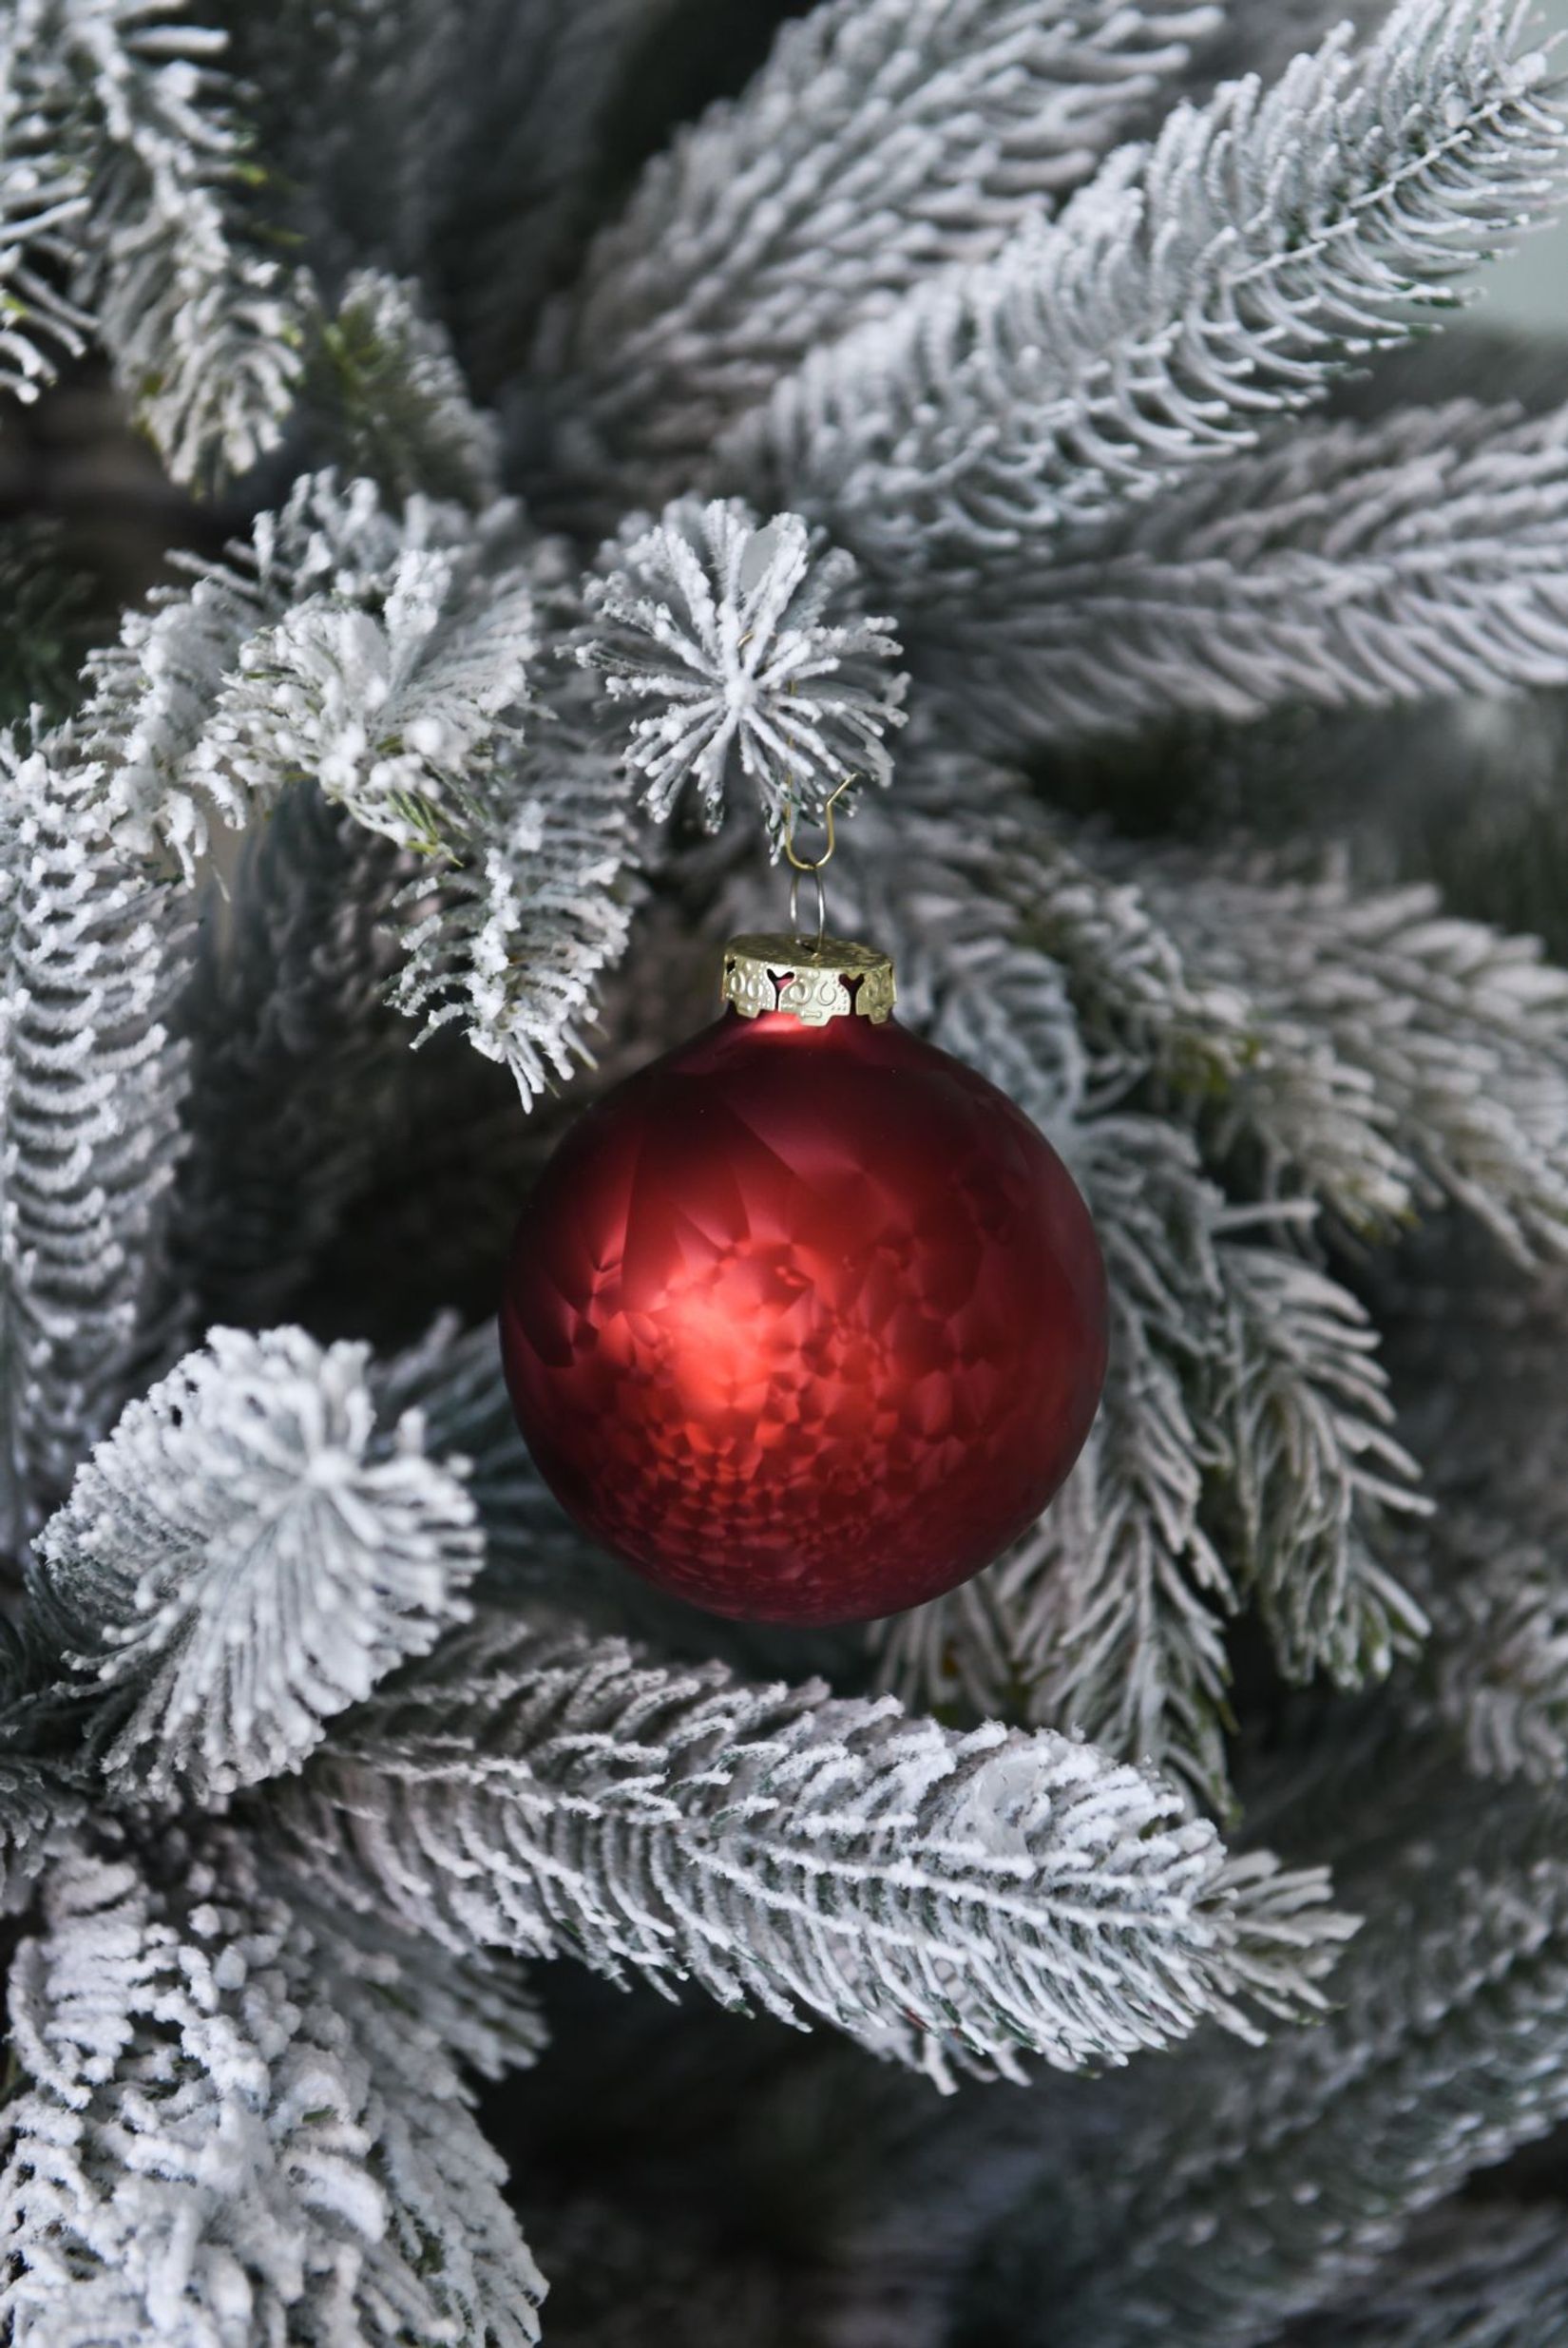 Künstlicher Weihnachtsbaum Premium Nordmanntanne mit Schnee 150 cm hoch